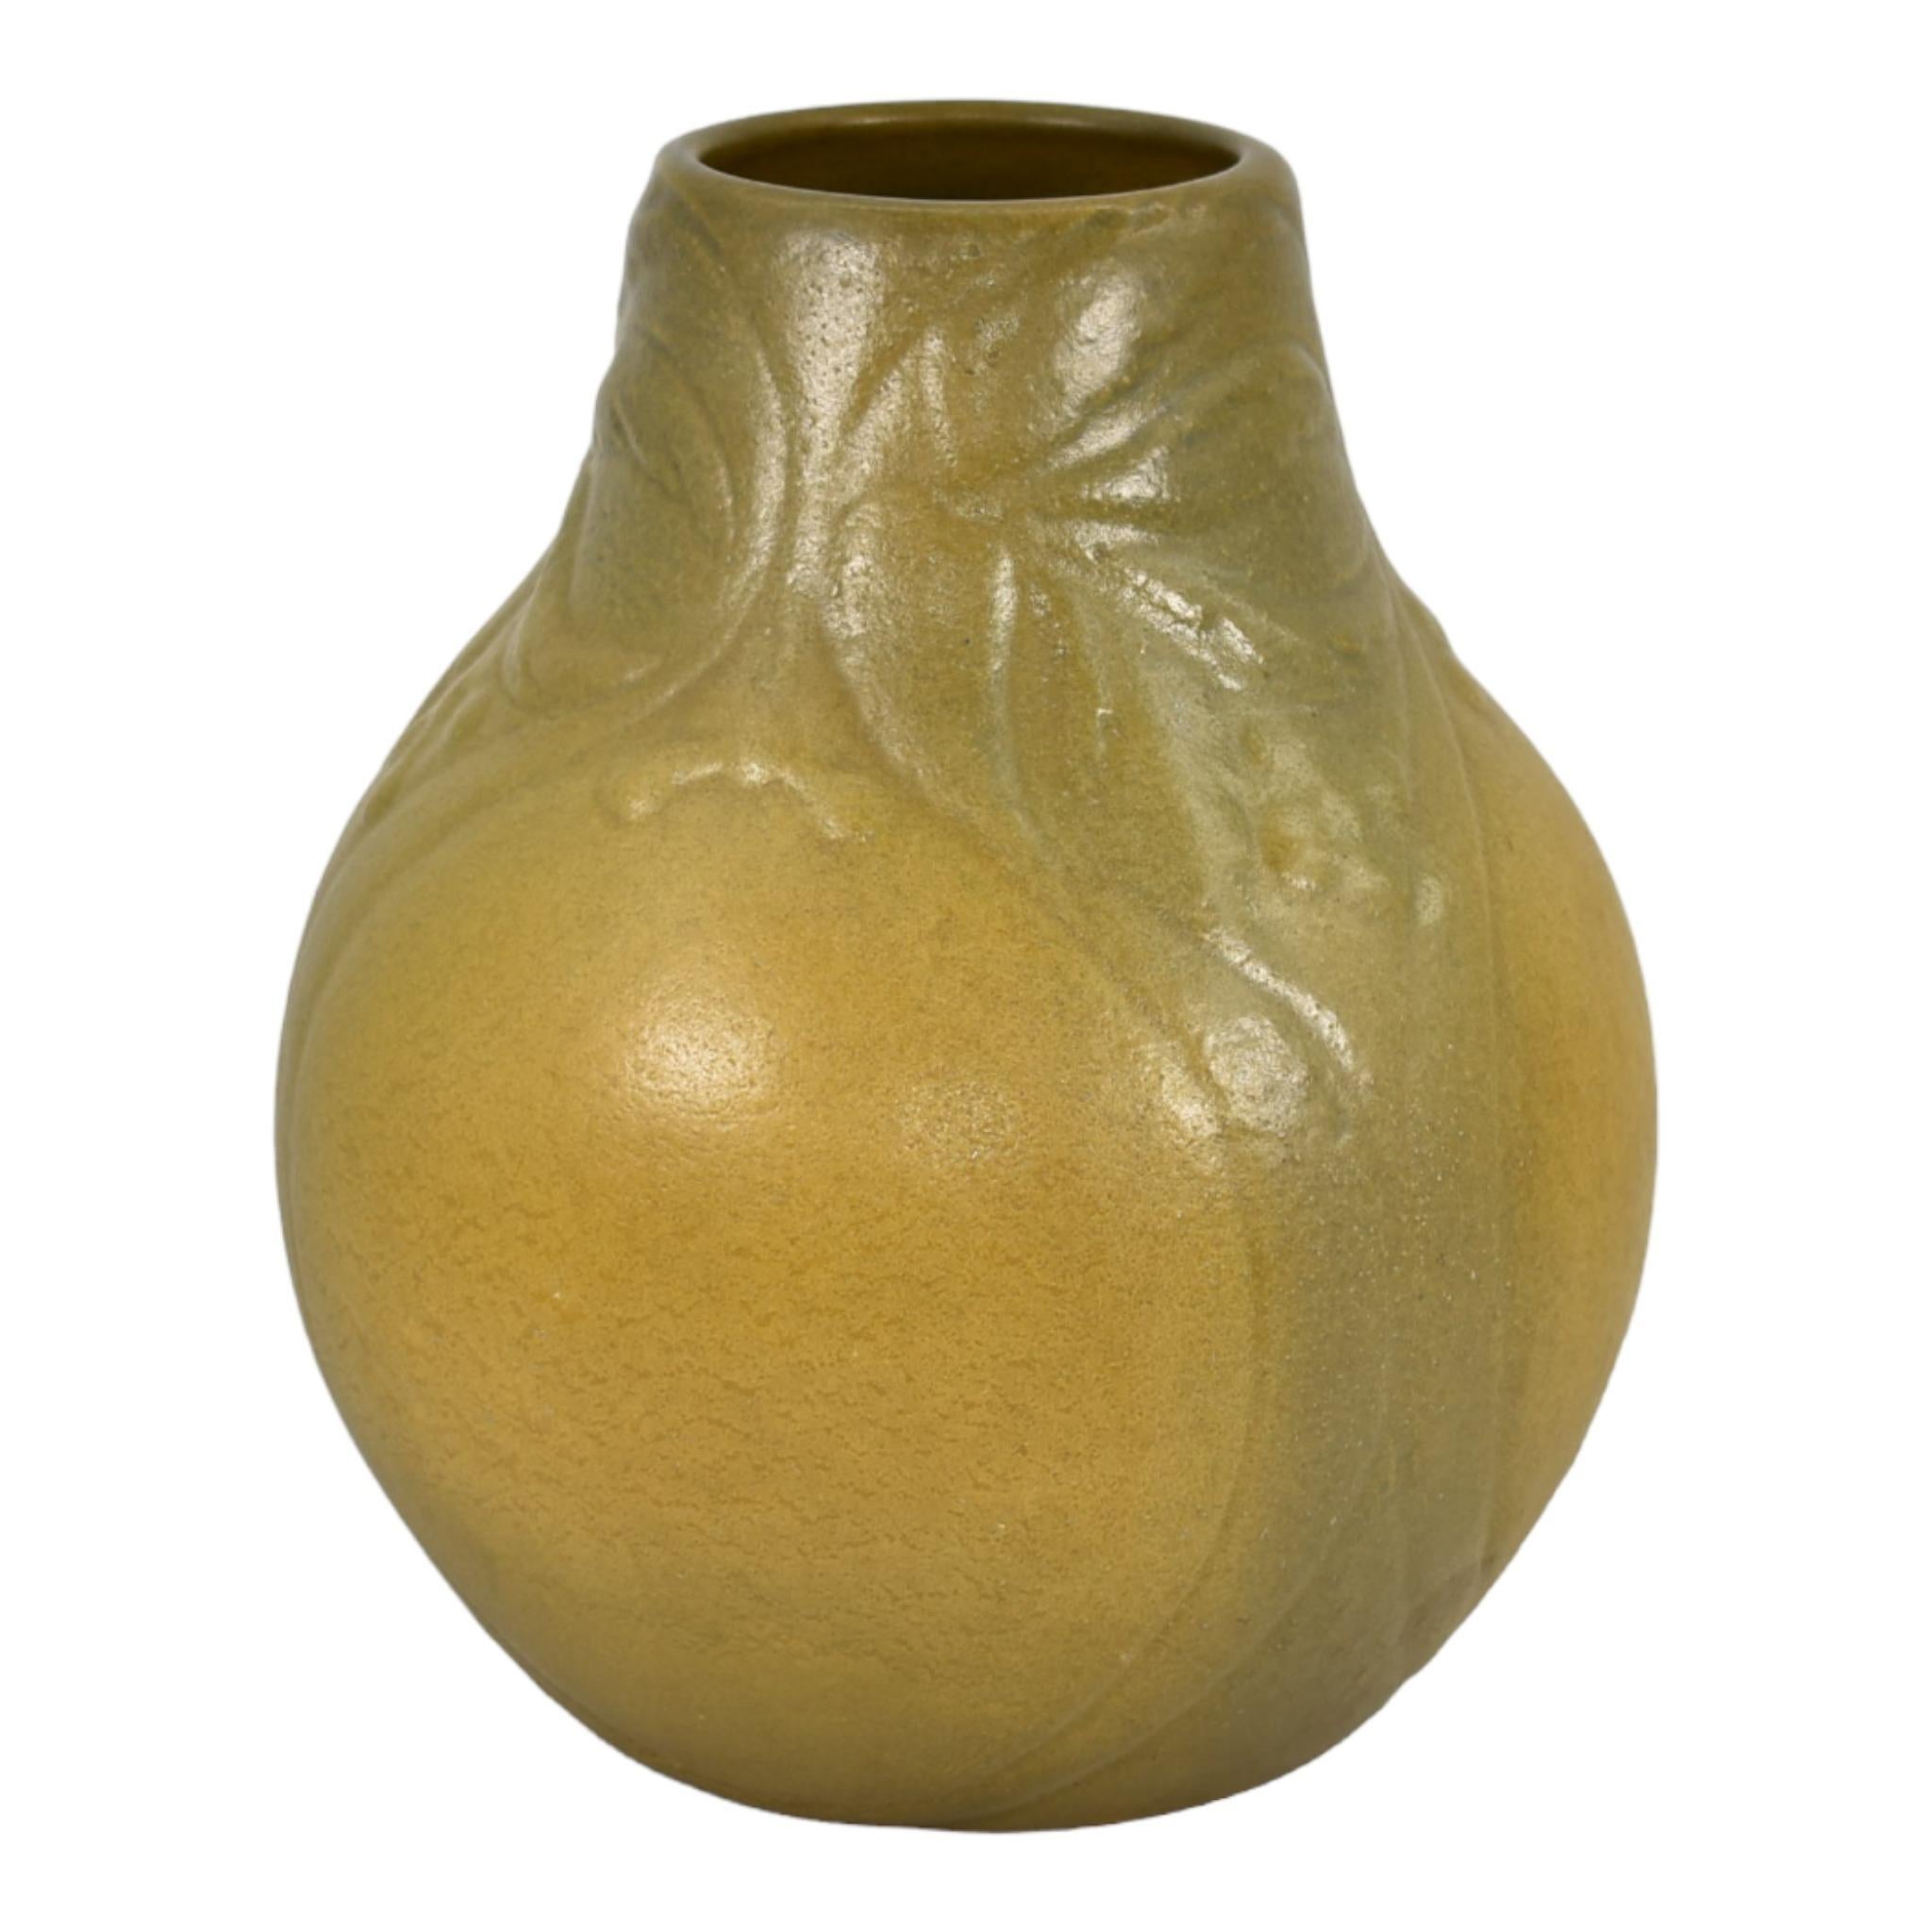 Van Briggle 1904 Vintage Arts and Crafts Pottery Olivgrüne Keramikvase 164
Atemberaubende kunsthandwerkliche Vase in einem wunderschönen organischen dunklen und hellen Olivgrün über einem stilisierten Pflanzendesign.
Ausgezeichneter Originalzustand.